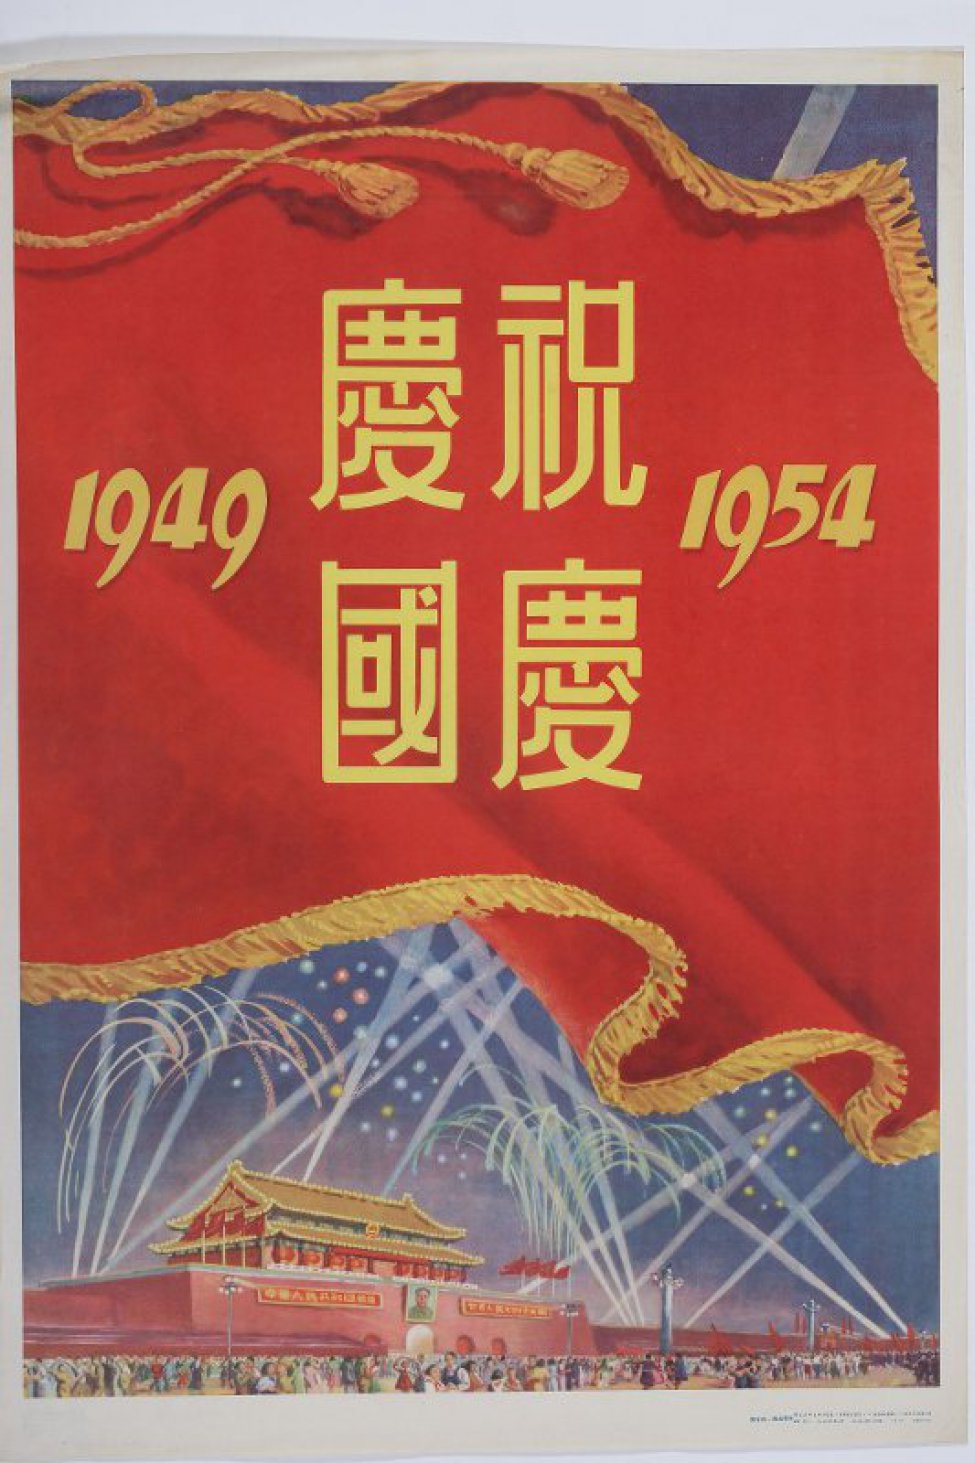 В верхней части плаката на Красном знамени четыре иероглифа и цифры "1948", " 1954". Внизу под Знаменем -здание, на стене которого- плакаты и портрет Мао Цзе-дуна. Танцующий и гуляющий народ. На синем небе- разноцветные фейерверки.